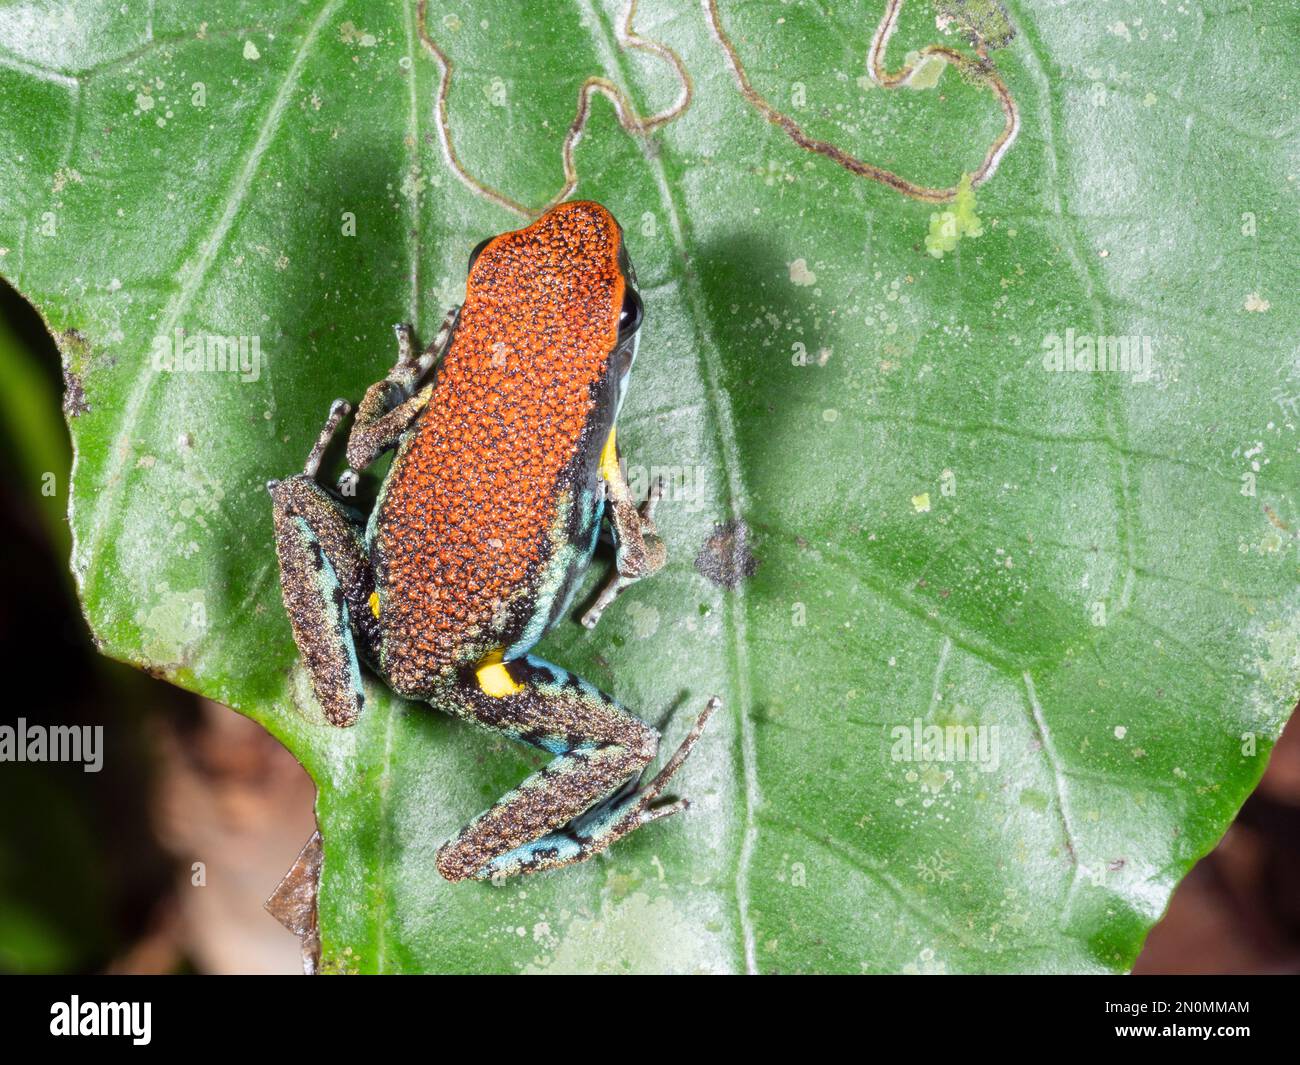 Ecuadorian poison frog (Ameerega bilinguis) In tropical rainforest in the Ecuadorian Amazon. Stock Photo